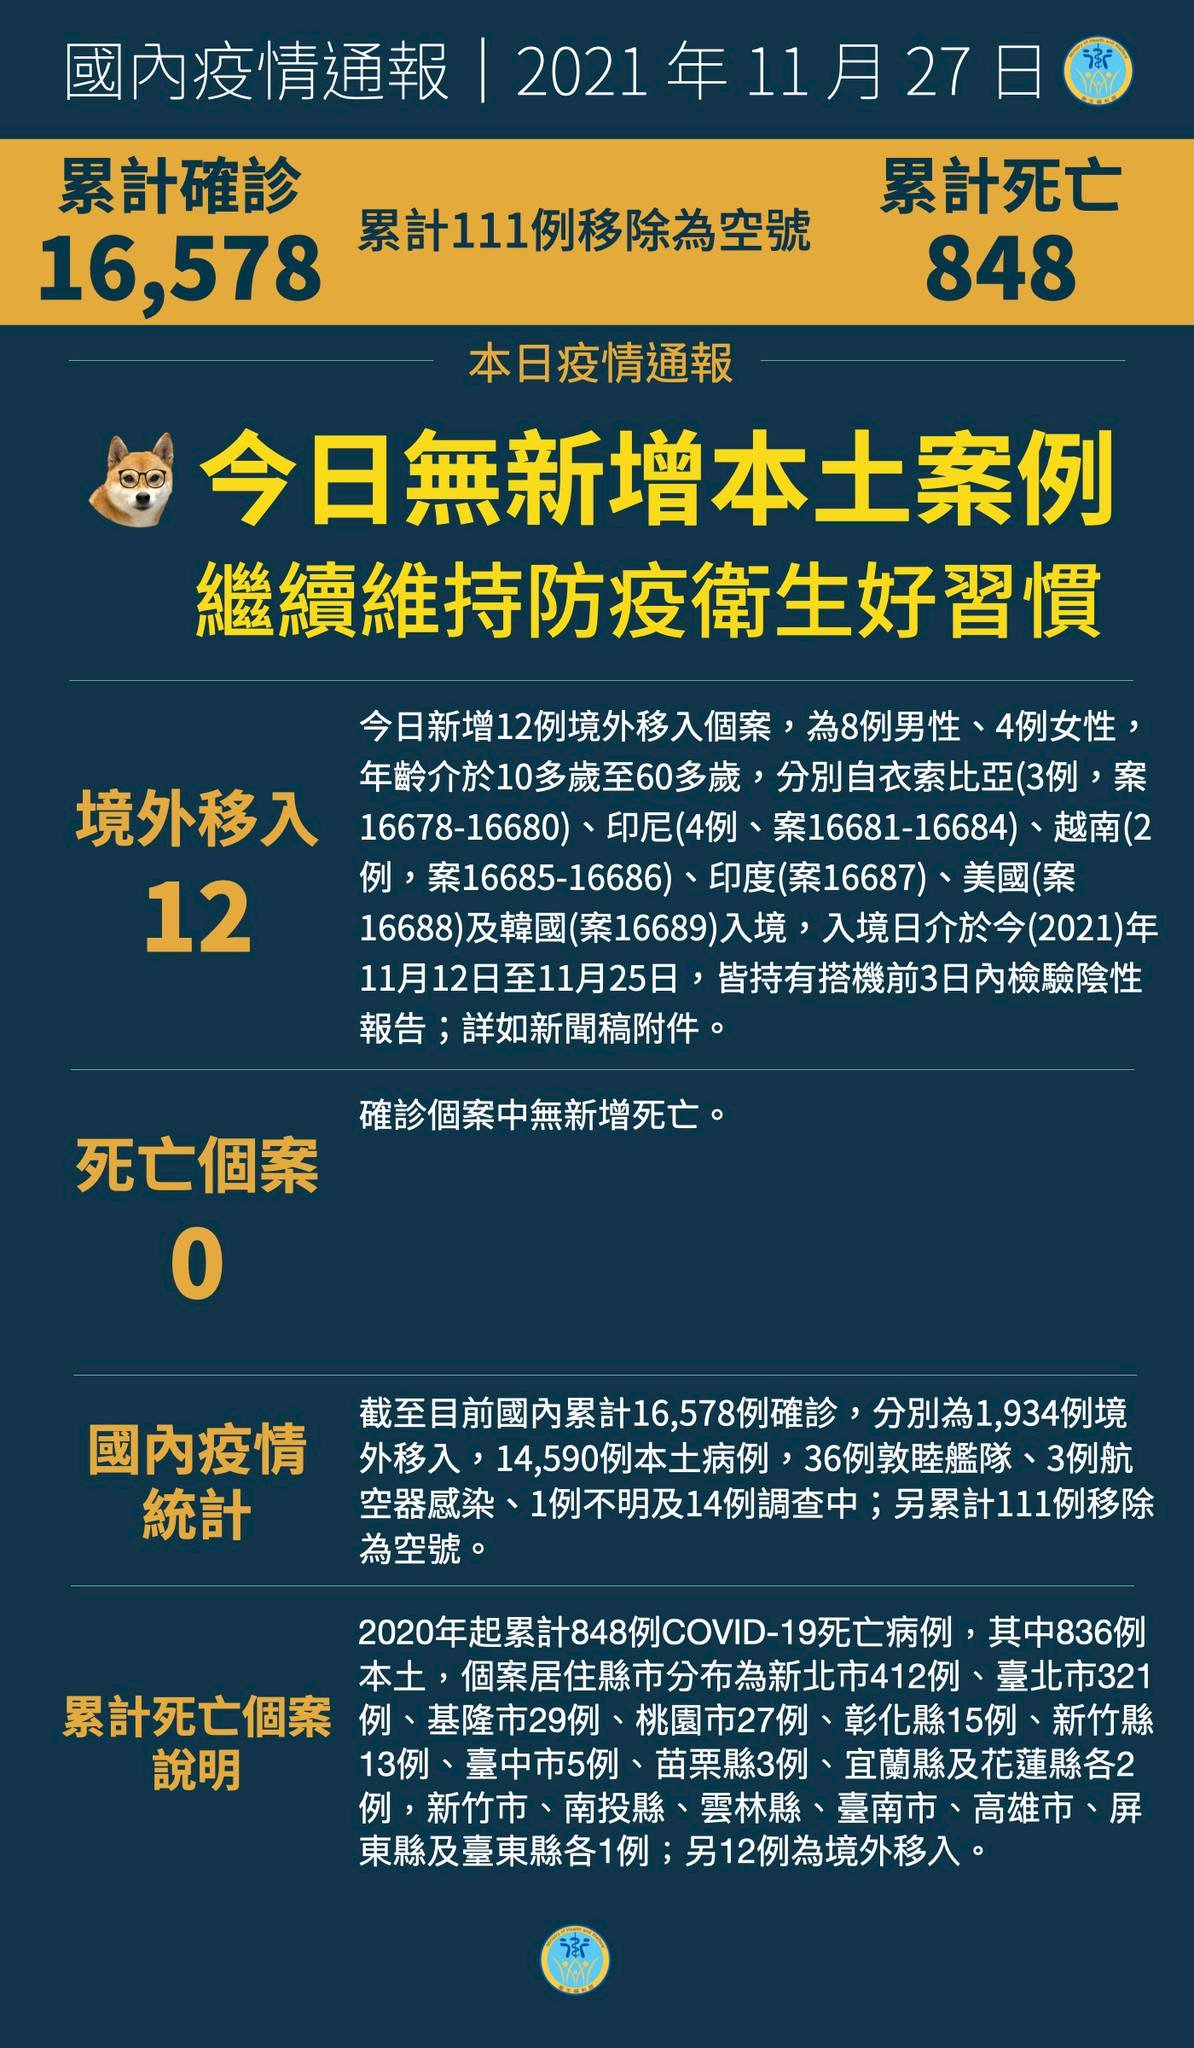 27/11, Đài Loan ghi nhận thêm 12 trường hợp nhiễm COVID-19 từ nước ngoài